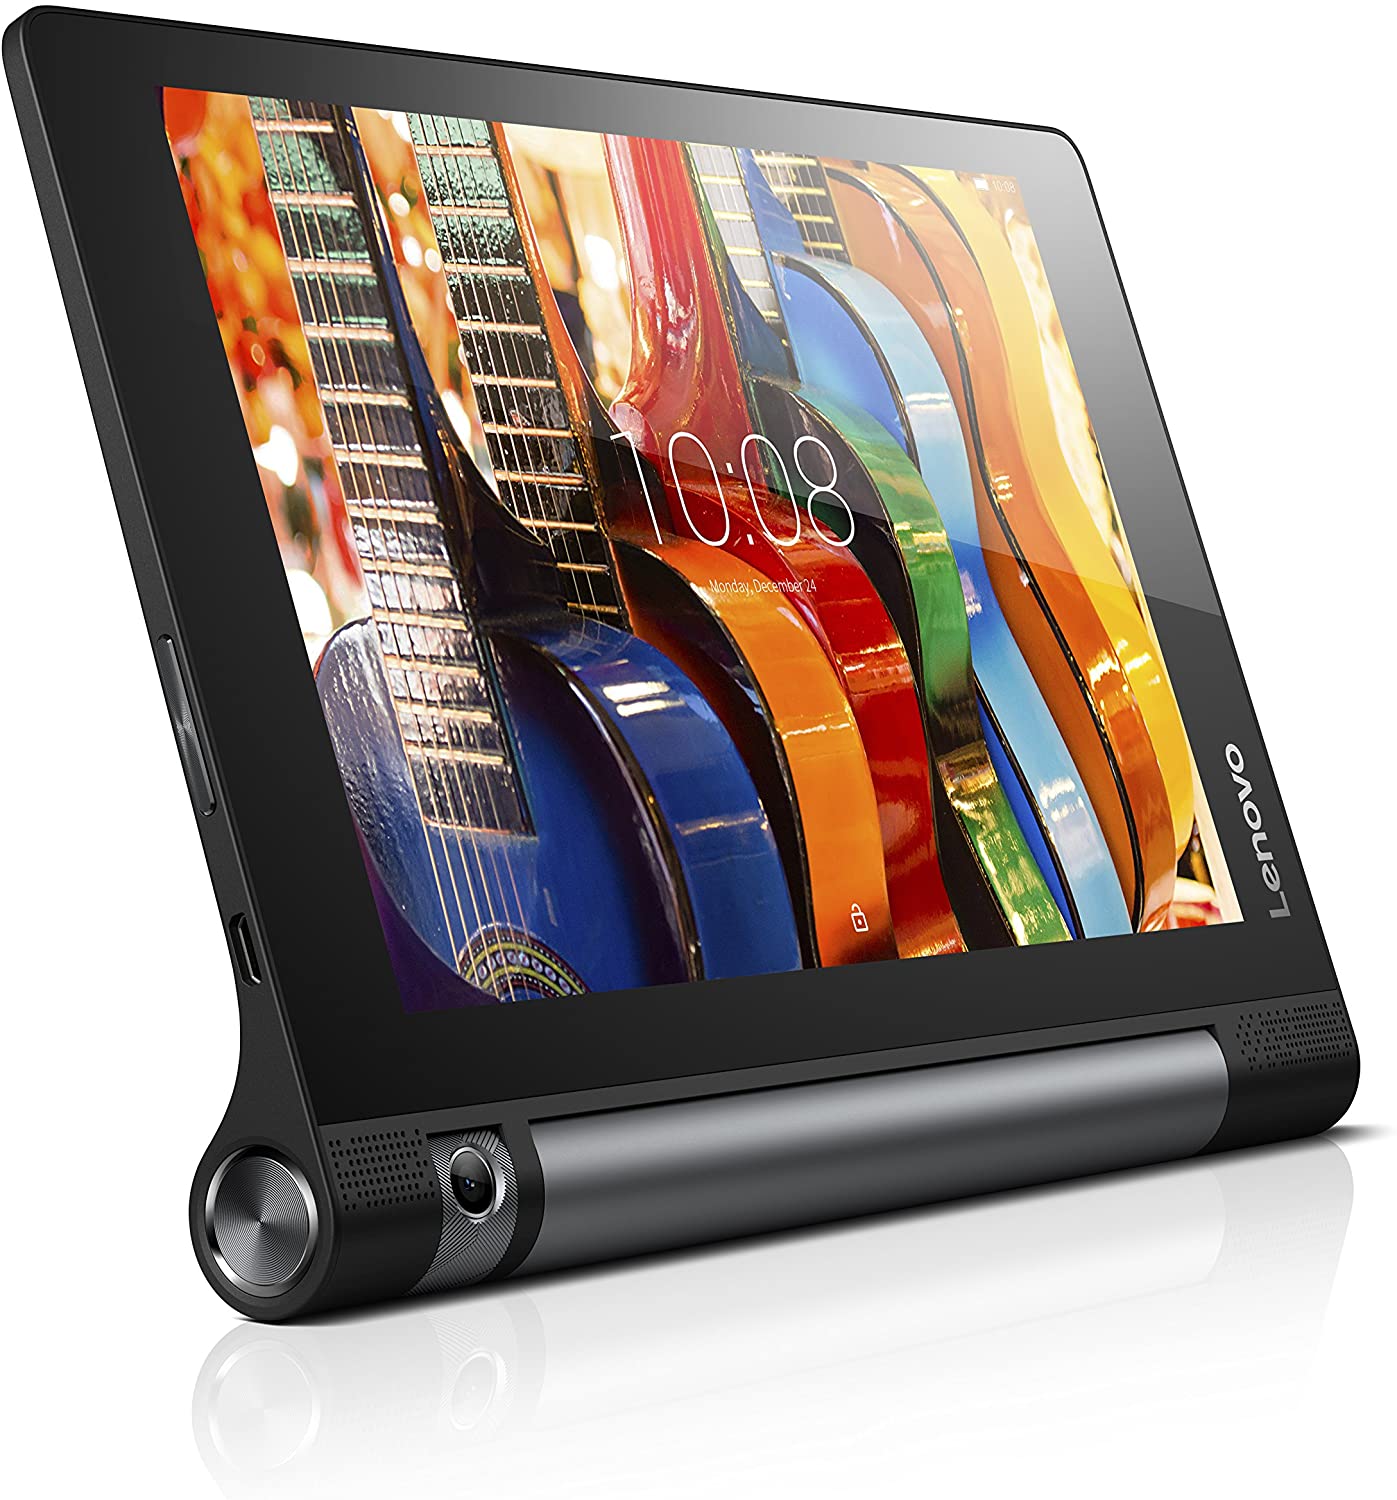 Lenovo Yoga Tab 3 Pro Media Markt